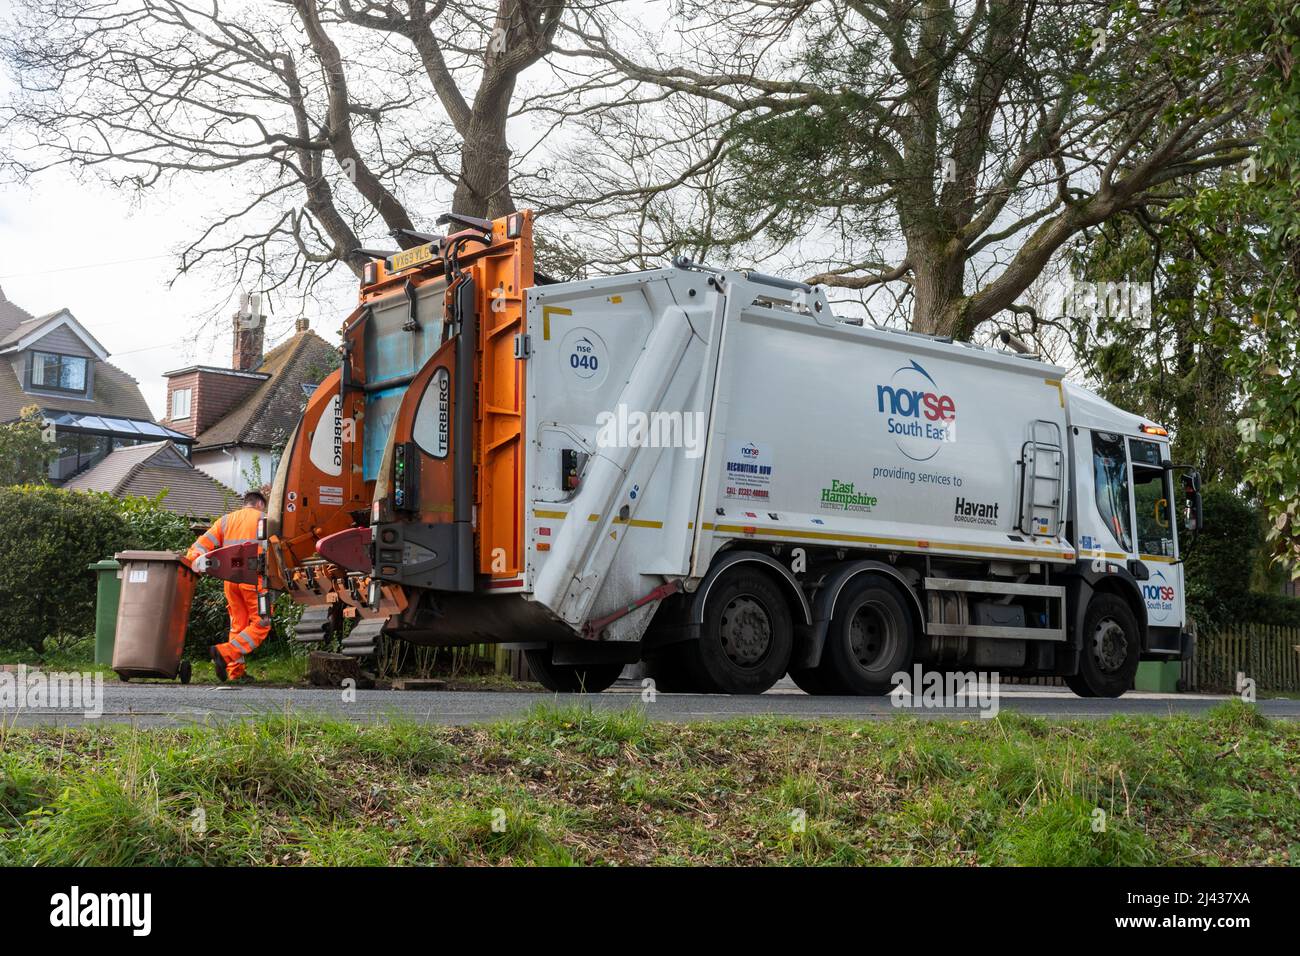 Nordische Mülltonne im Südosten, die in East Hampshire, England, Großbritannien, Abfallentsorgungsdienste anbietet, wobei ein Binder die Haushaltsmüll entleert Stockfoto